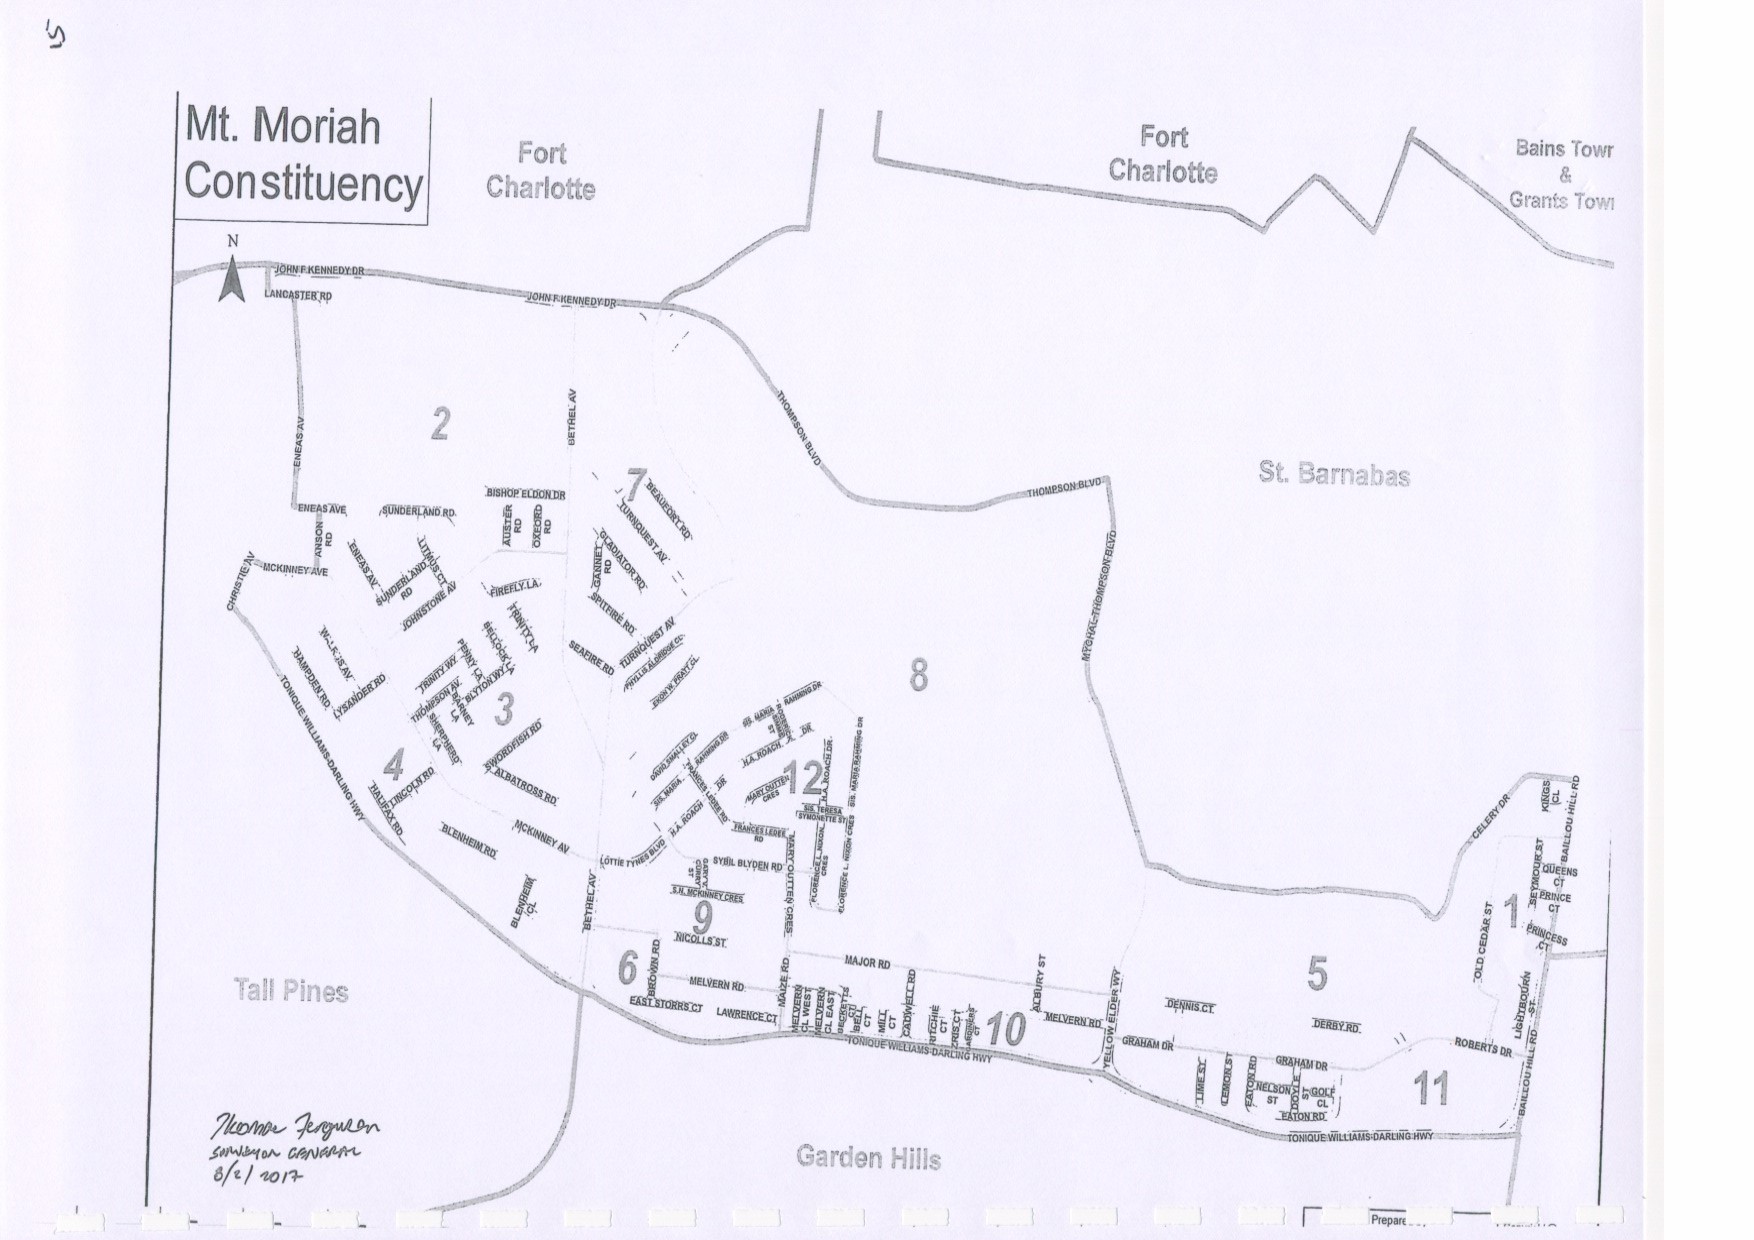 Mt. Moriah Constituency 2017